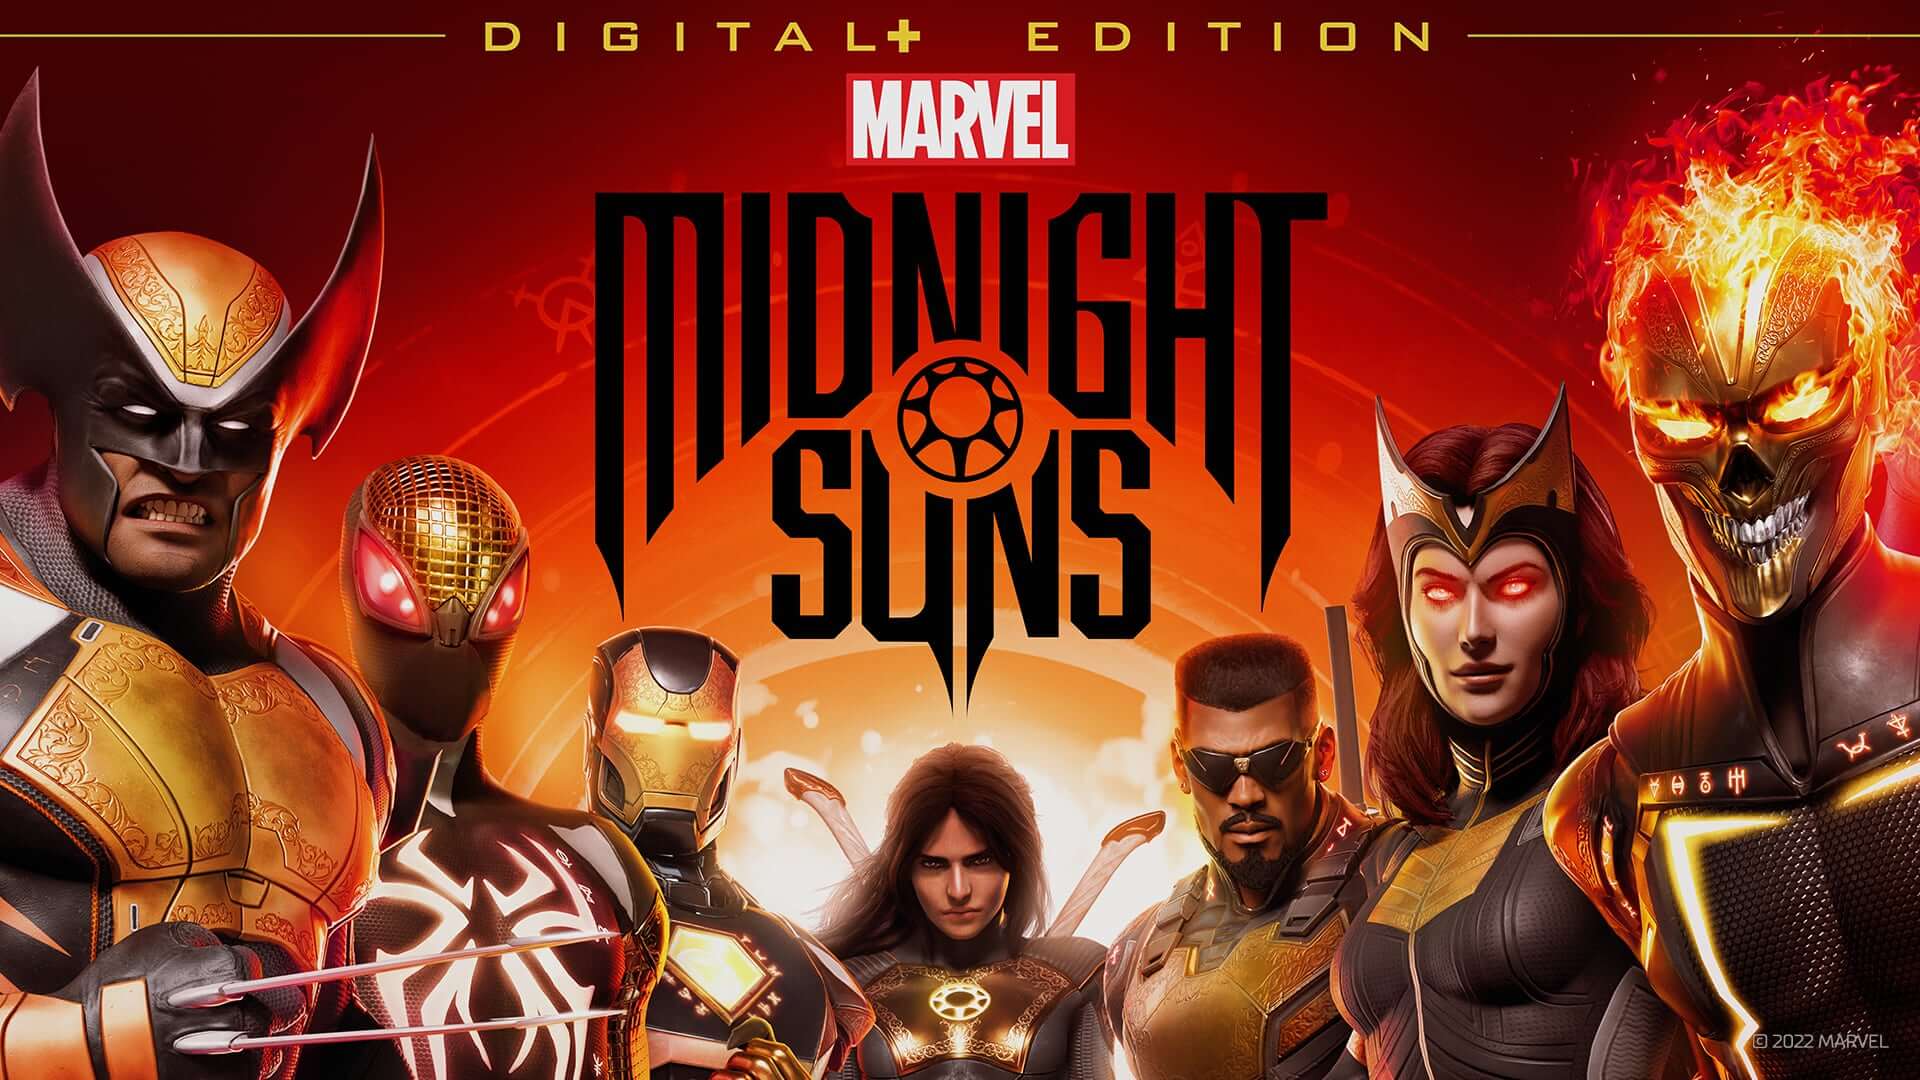 Marvel's Midnight Suns has been postponed again!